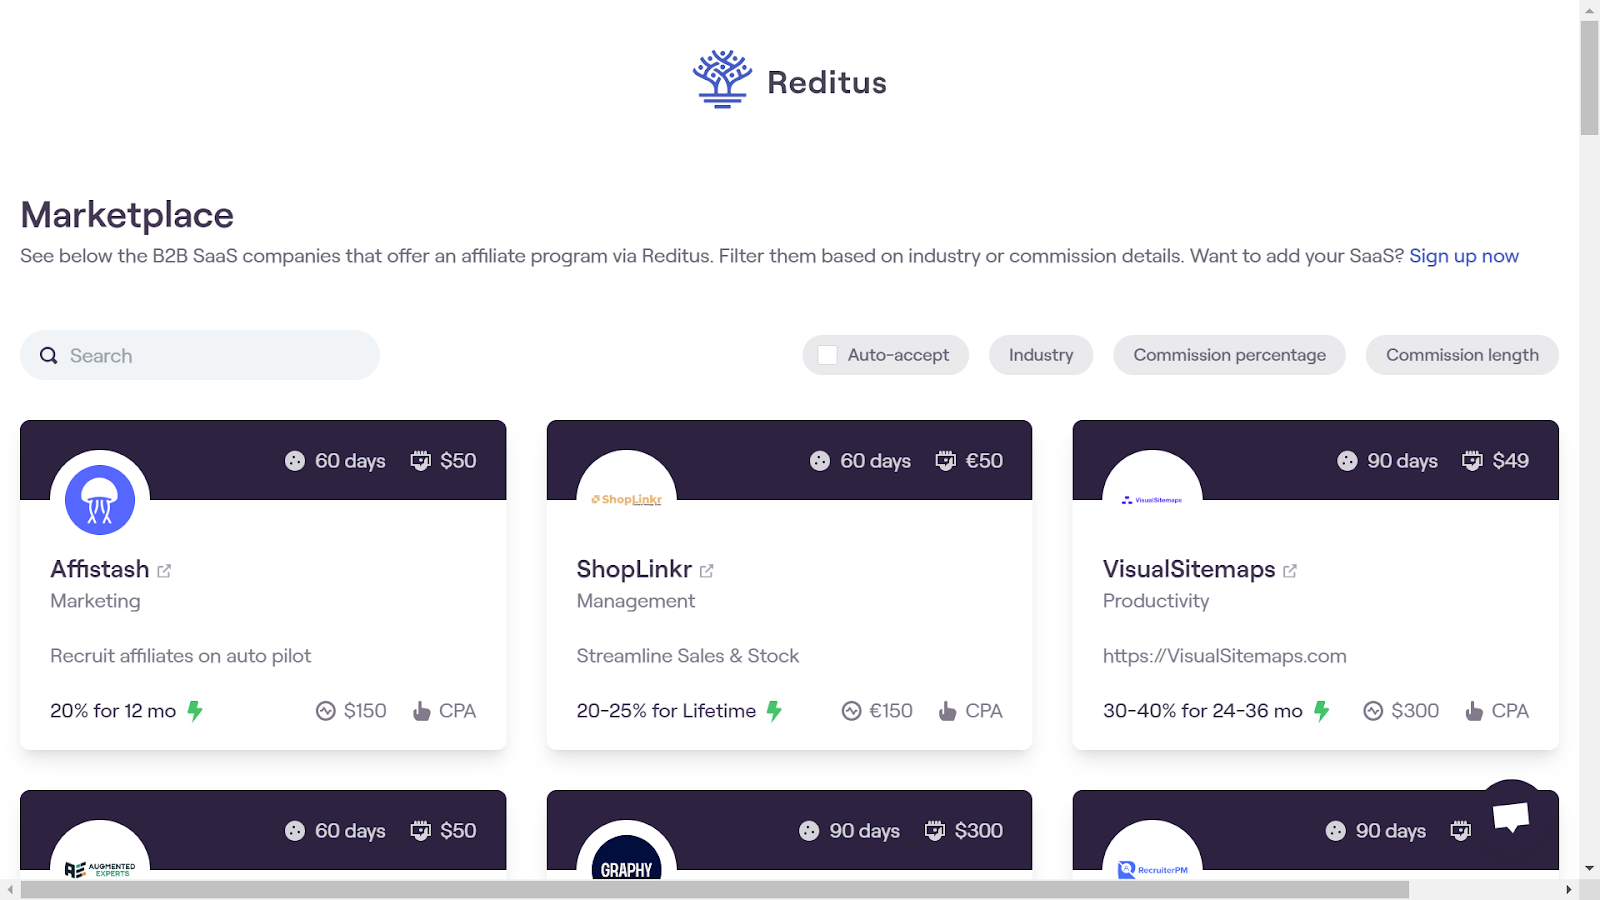 Screenshot from Reditus Marketplace landing page.